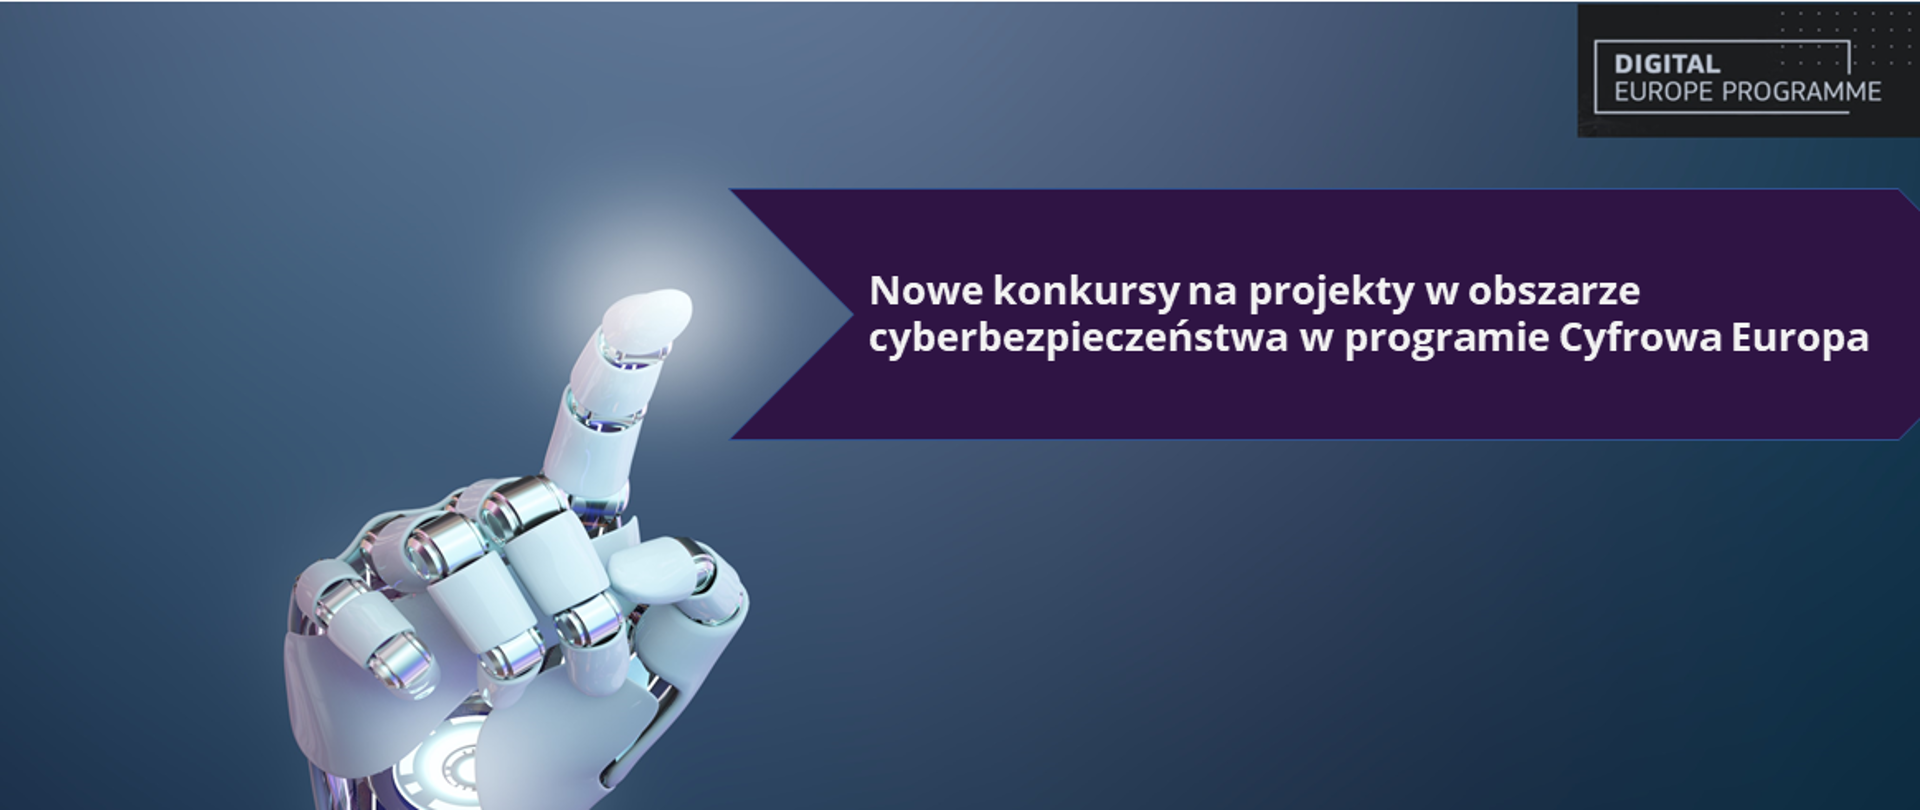 tło dłoń robota Cyborg, sztuczna inteligencja, logo Digital Europe Programme, tytuł Nowe konkursy na projekty w obszarze cyberbezpieczeństwa w programie Cyfrowa Europa